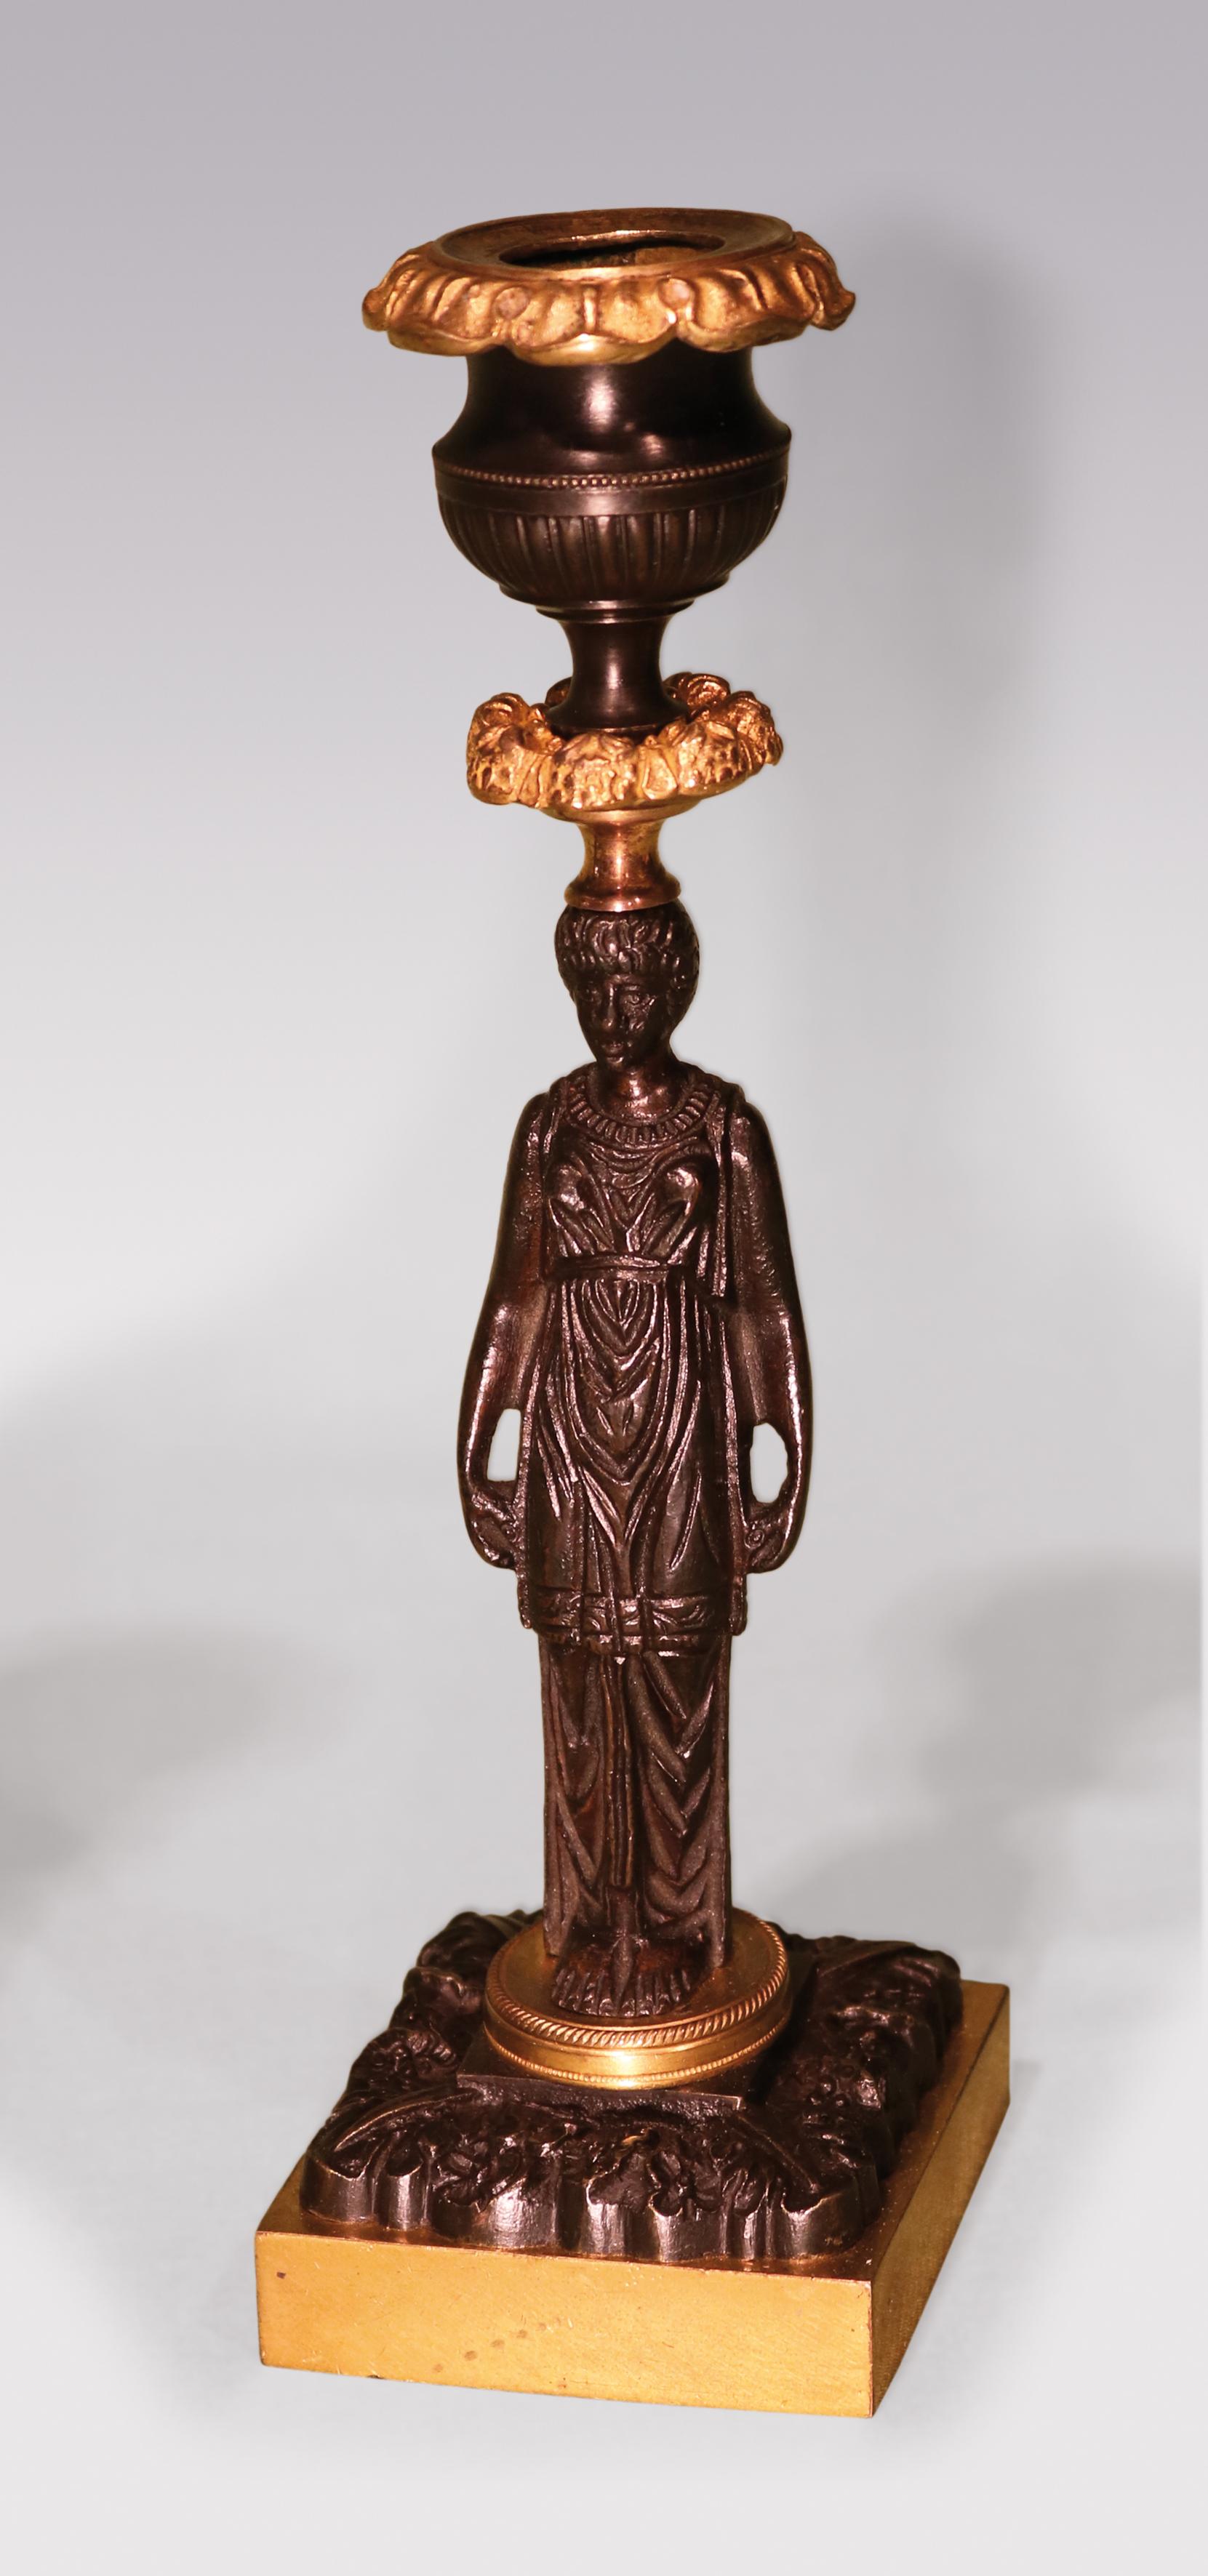 Une paire de chandeliers en bronze et bronze ciselé du début du 19e siècle de la période Régence, avec des becs cannelés et guillochés en forme d'urne au-dessus de tiges de femmes classiques montées sur des plates-formes circulaires guillochées se